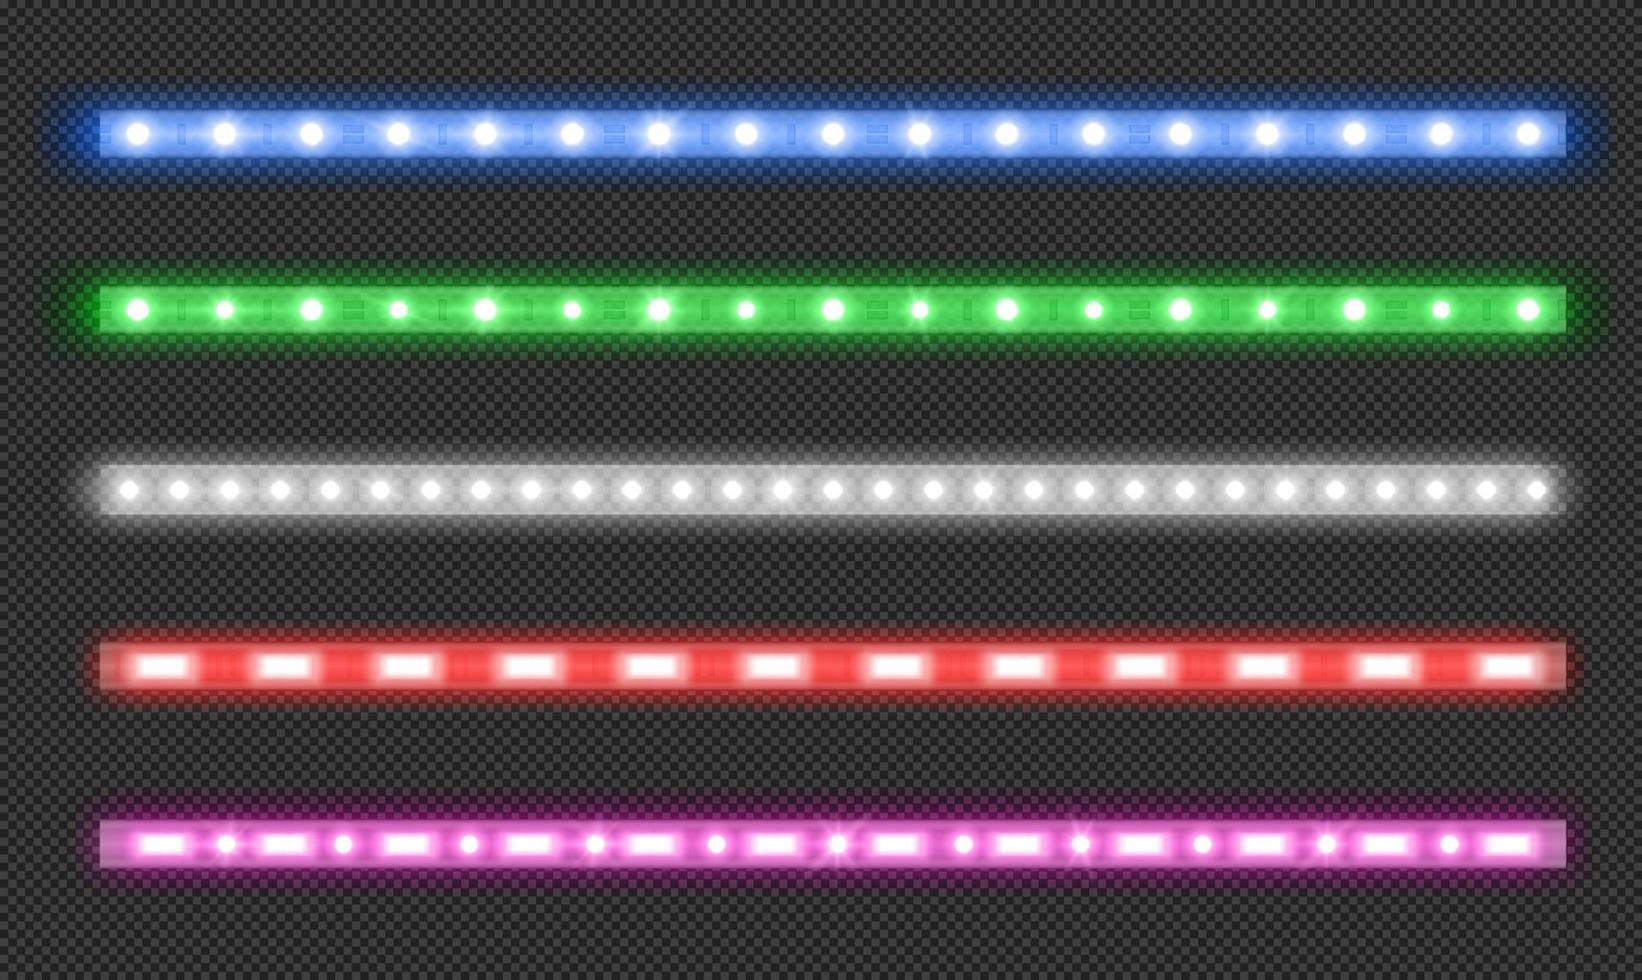 vektor uppsättning av led remsor med neon glöd effekt